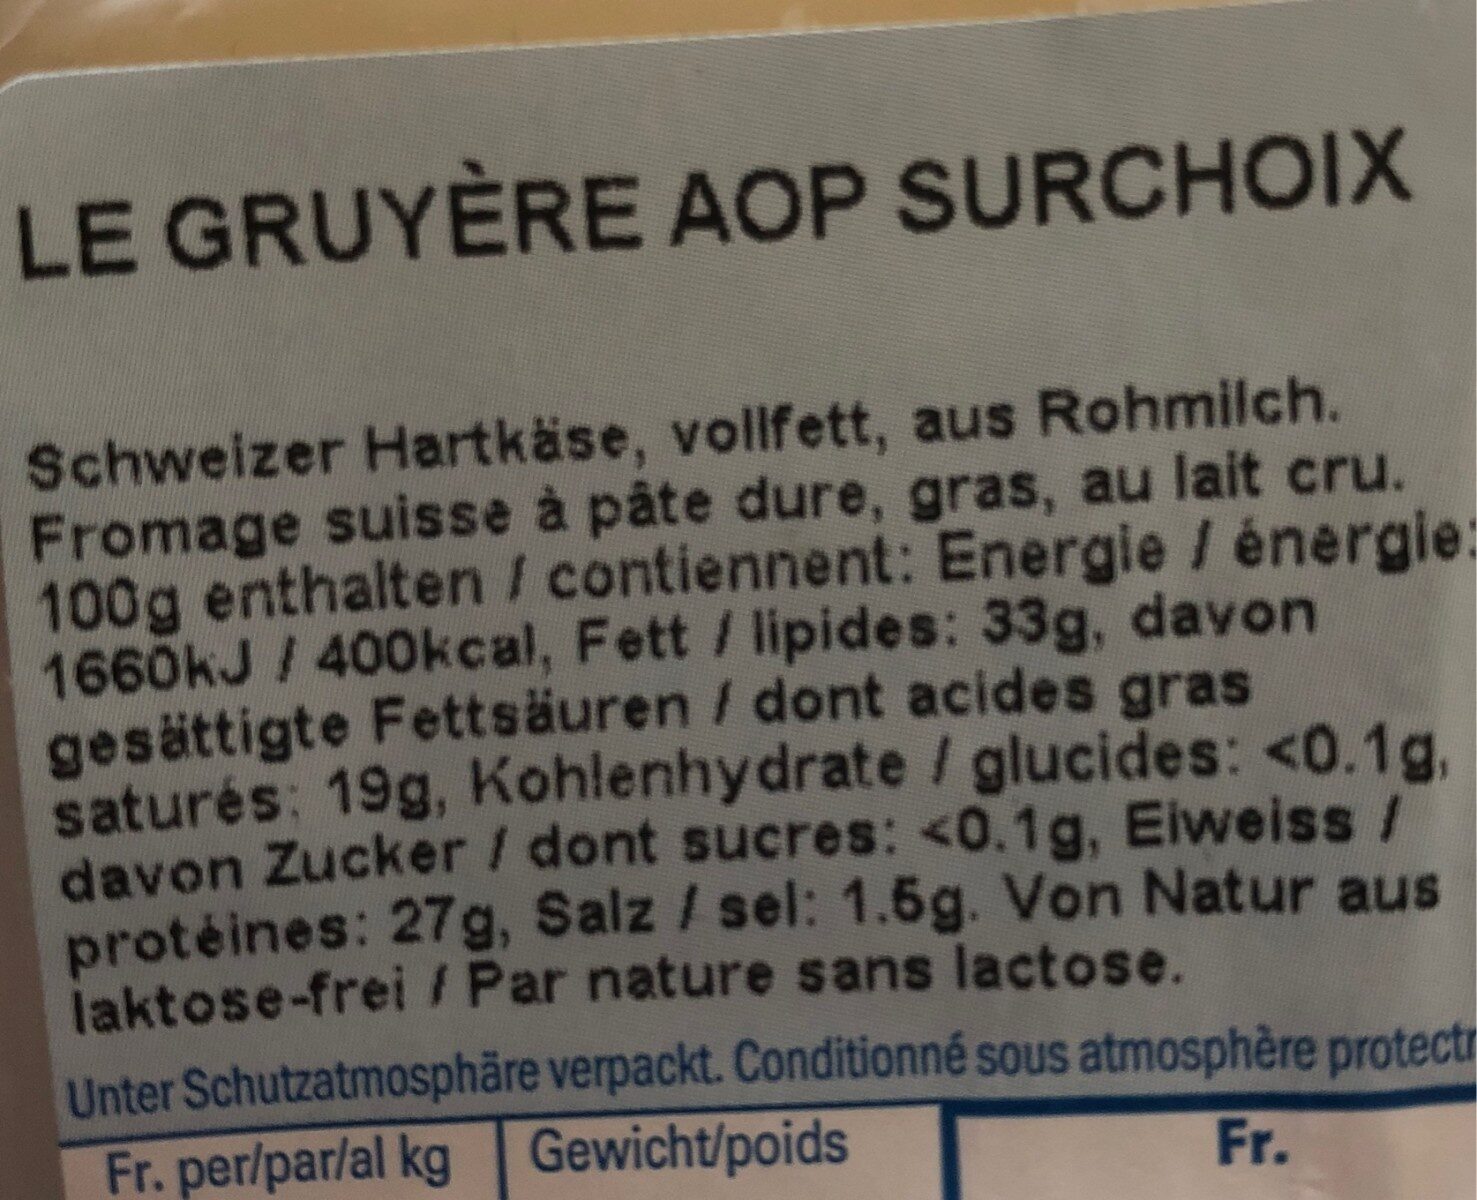 Le Gruyère AOP Surchoix - Ingredienti - fr